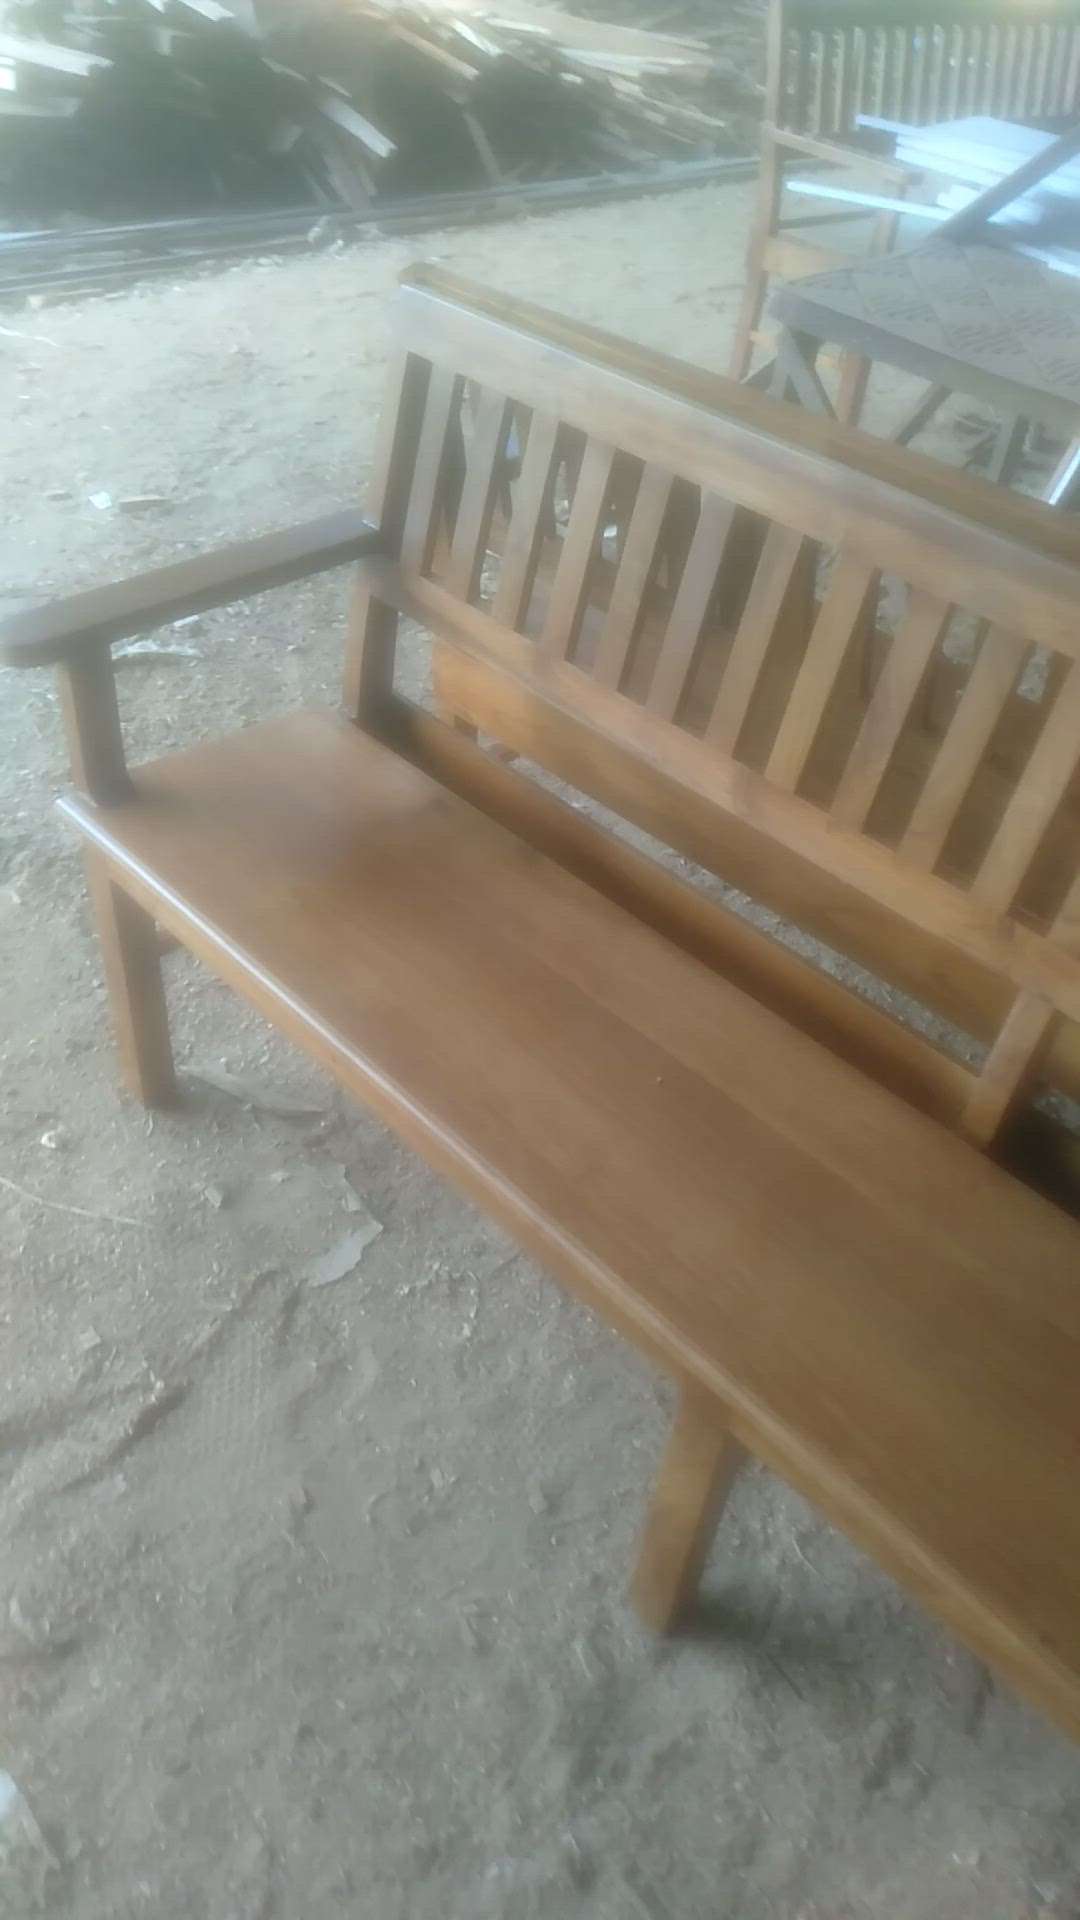 chruch bench